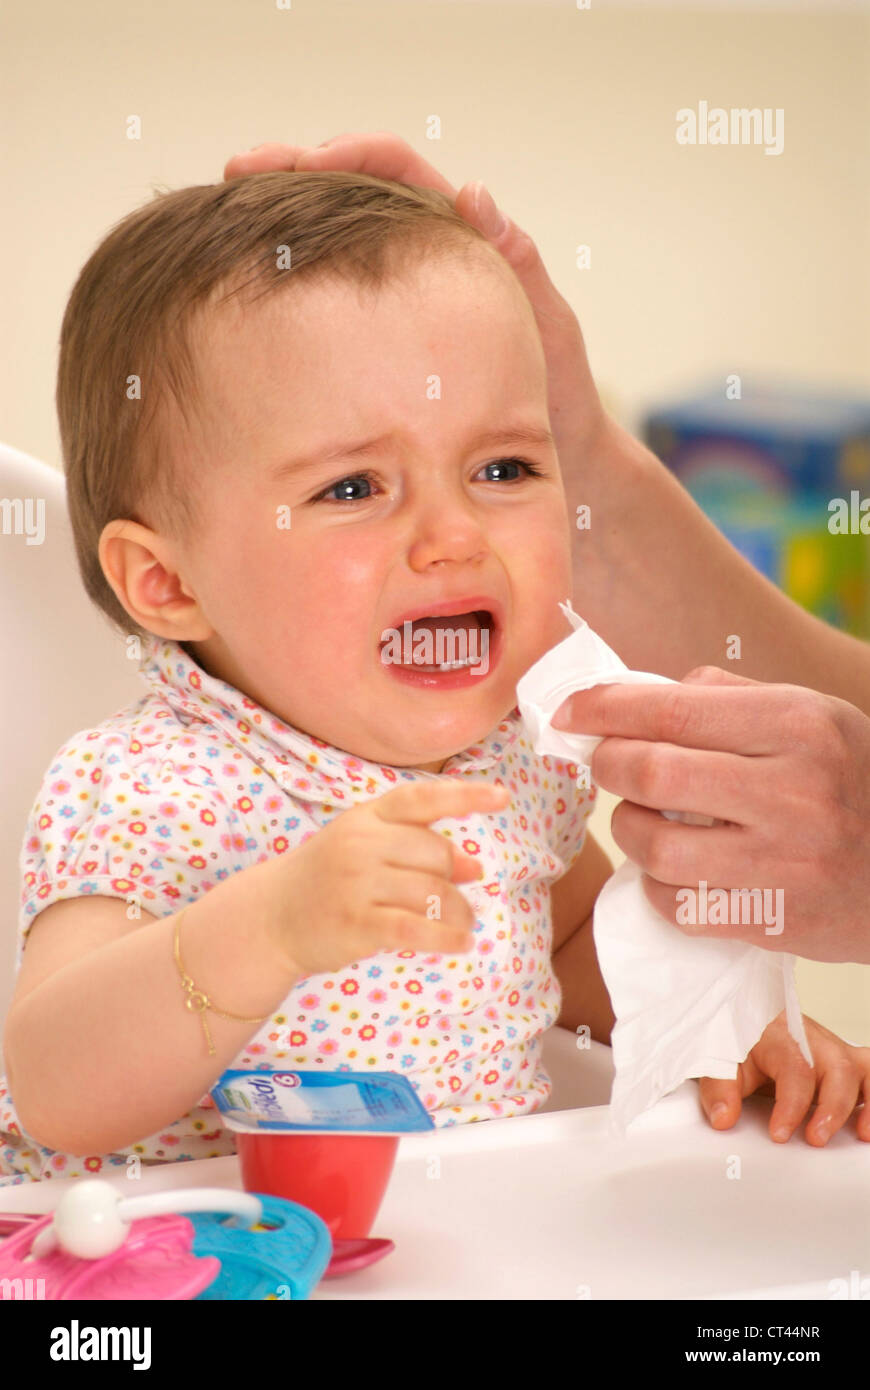 1-3 ANS bébé qui pleure Banque D'Images